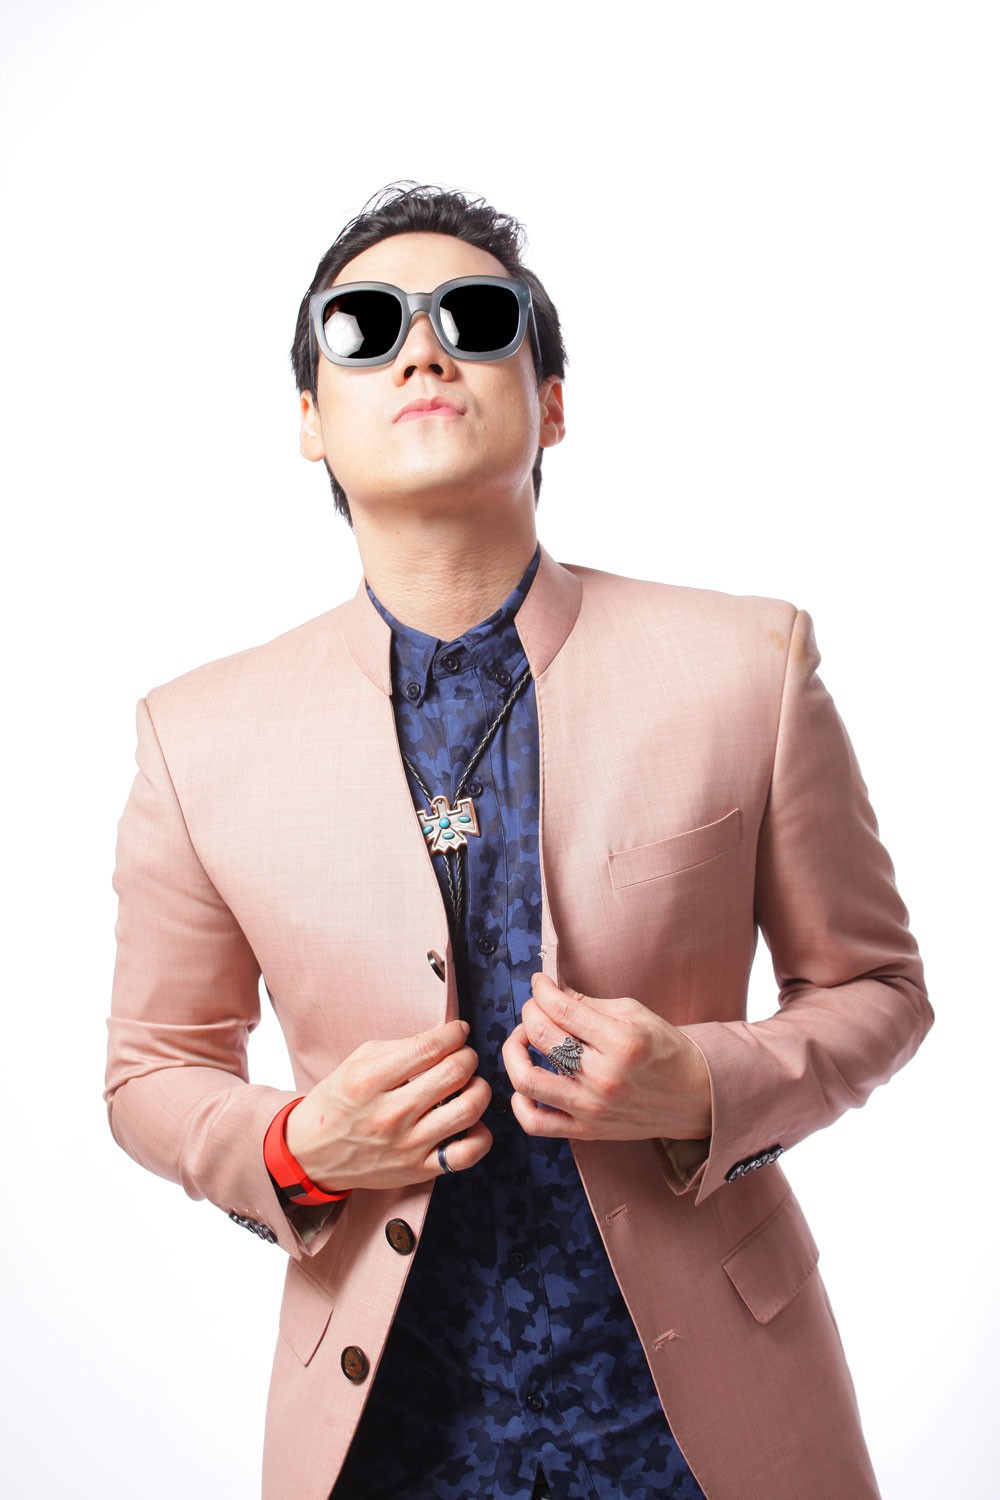 Ca sĩ Khánh Phương tái xuất bằng sản phẩm âm nhạc mới - Ảnh 3.